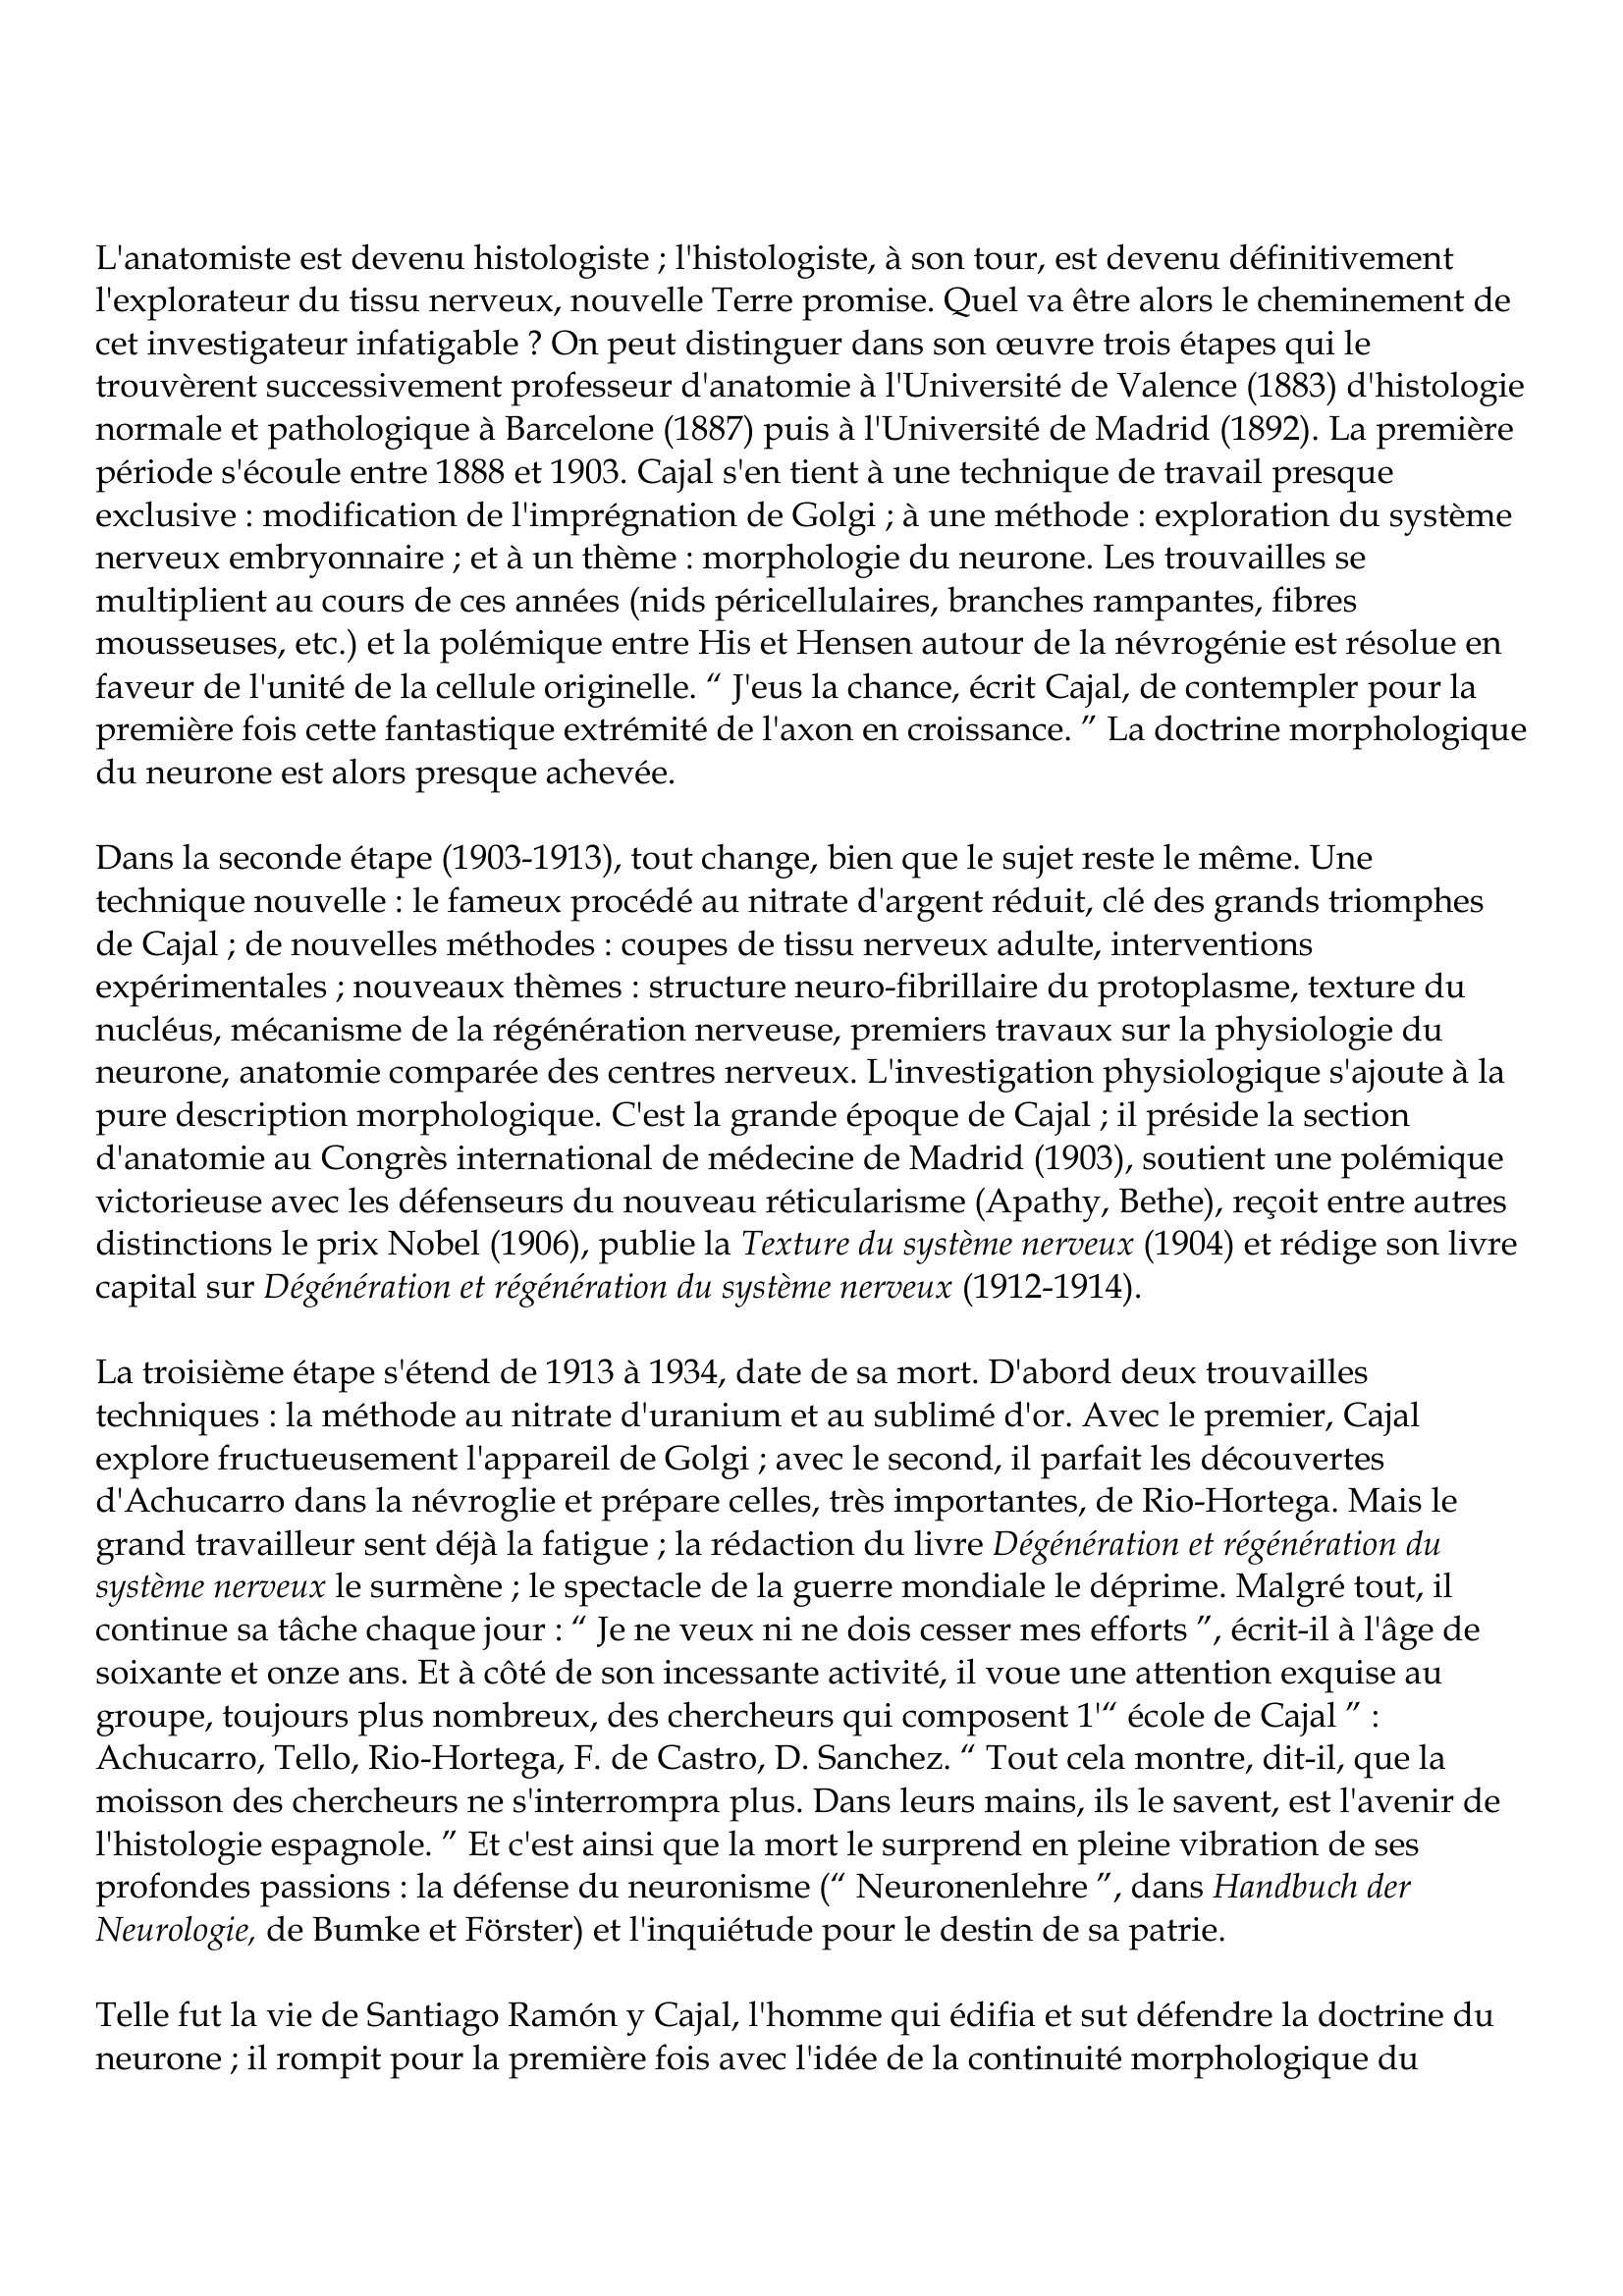 Prévisualisation du document Santiago Ramón y Cajal
1852-1934
Ramón y Cajal édifia sur des faits observés et sut défendre la doctrine du neurone : là est son
oeuvre.